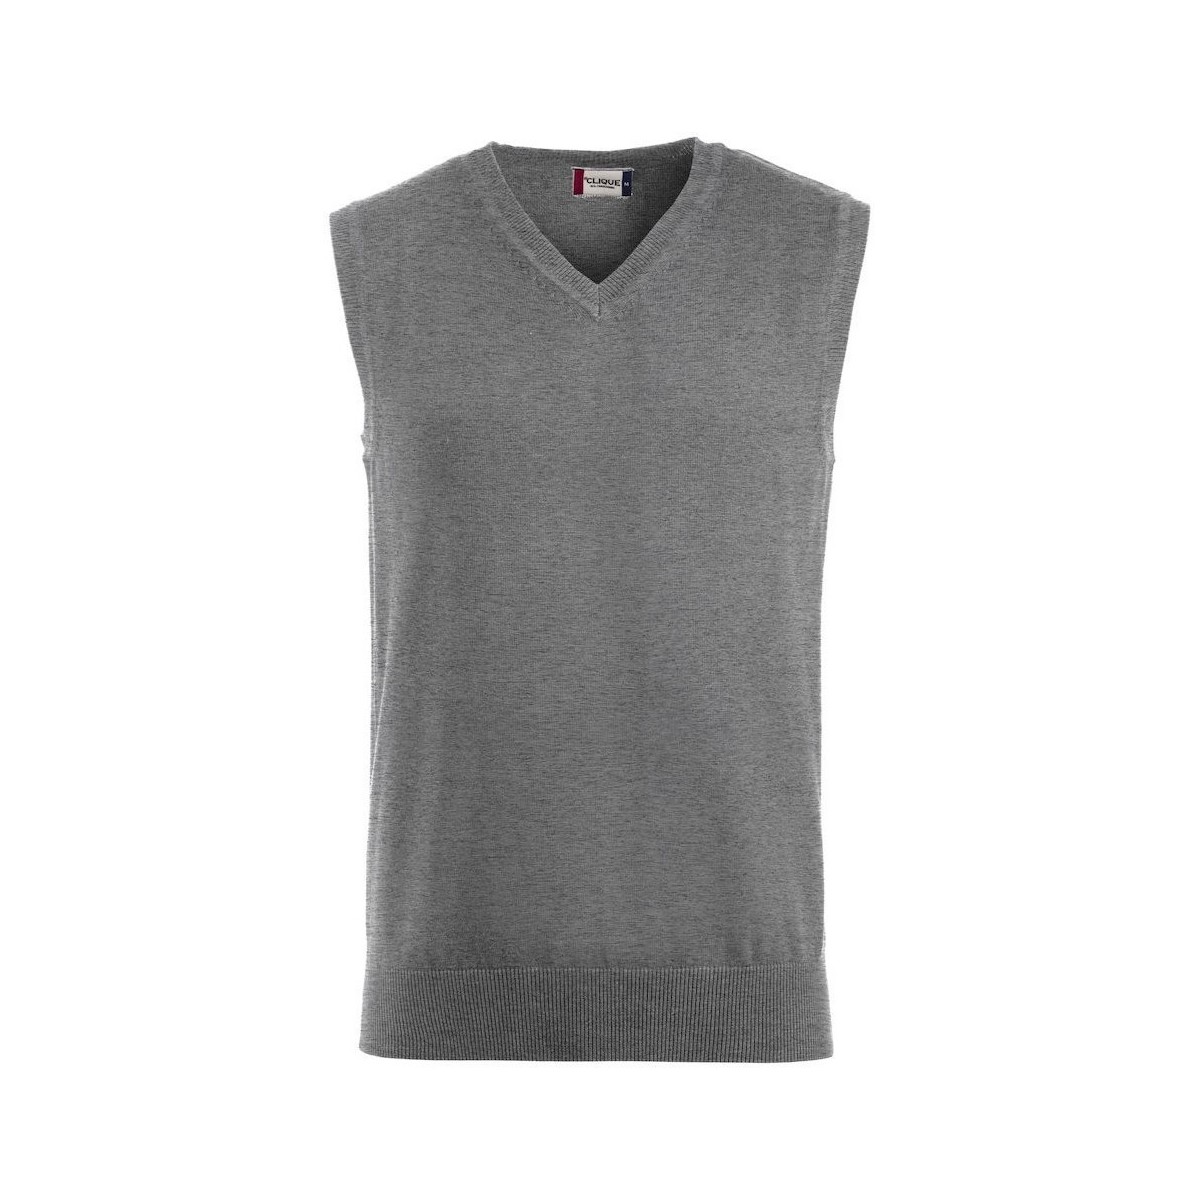 Abbigliamento Uomo Top / T-shirt senza maniche C-Clique Adrian Grigio